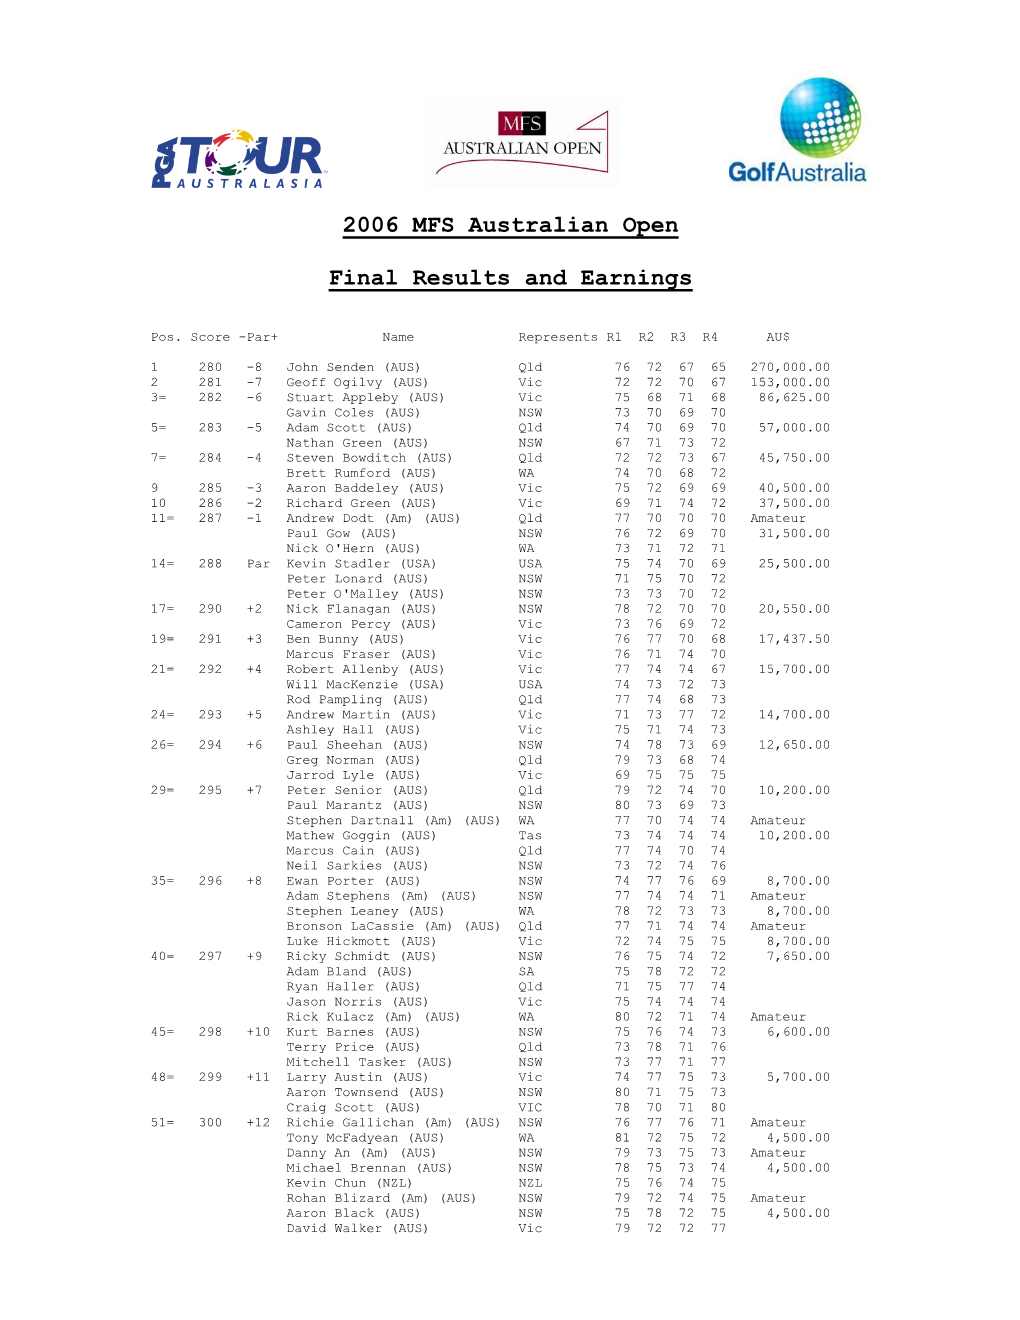 2006 MFS Australian Open Final Results and Earnings